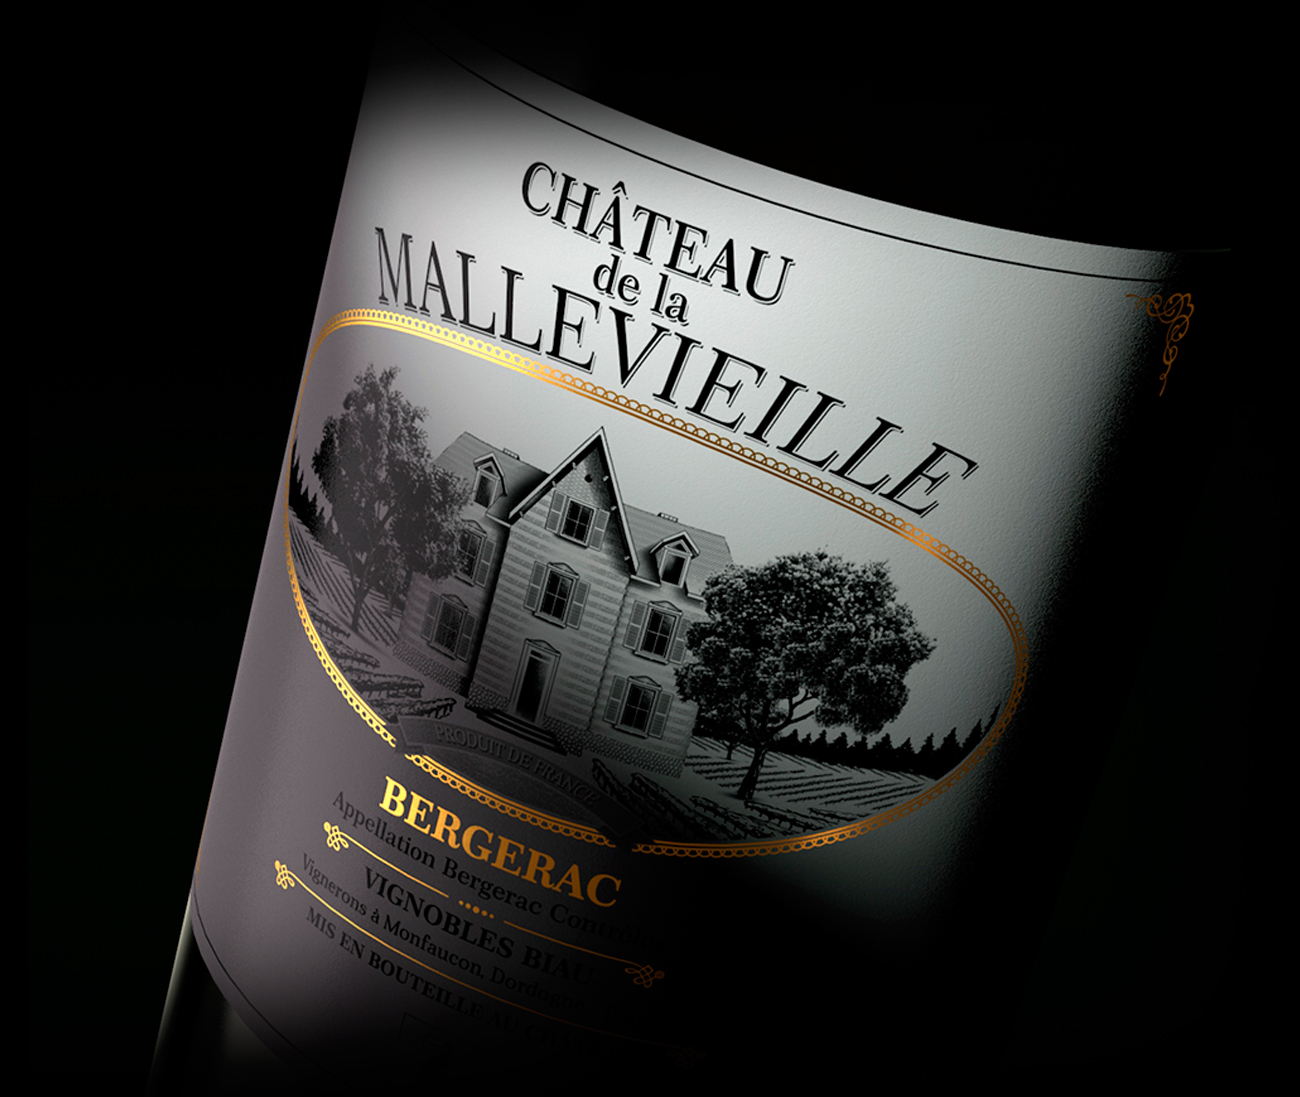 907 Chateu De La Mallevieille 01 1